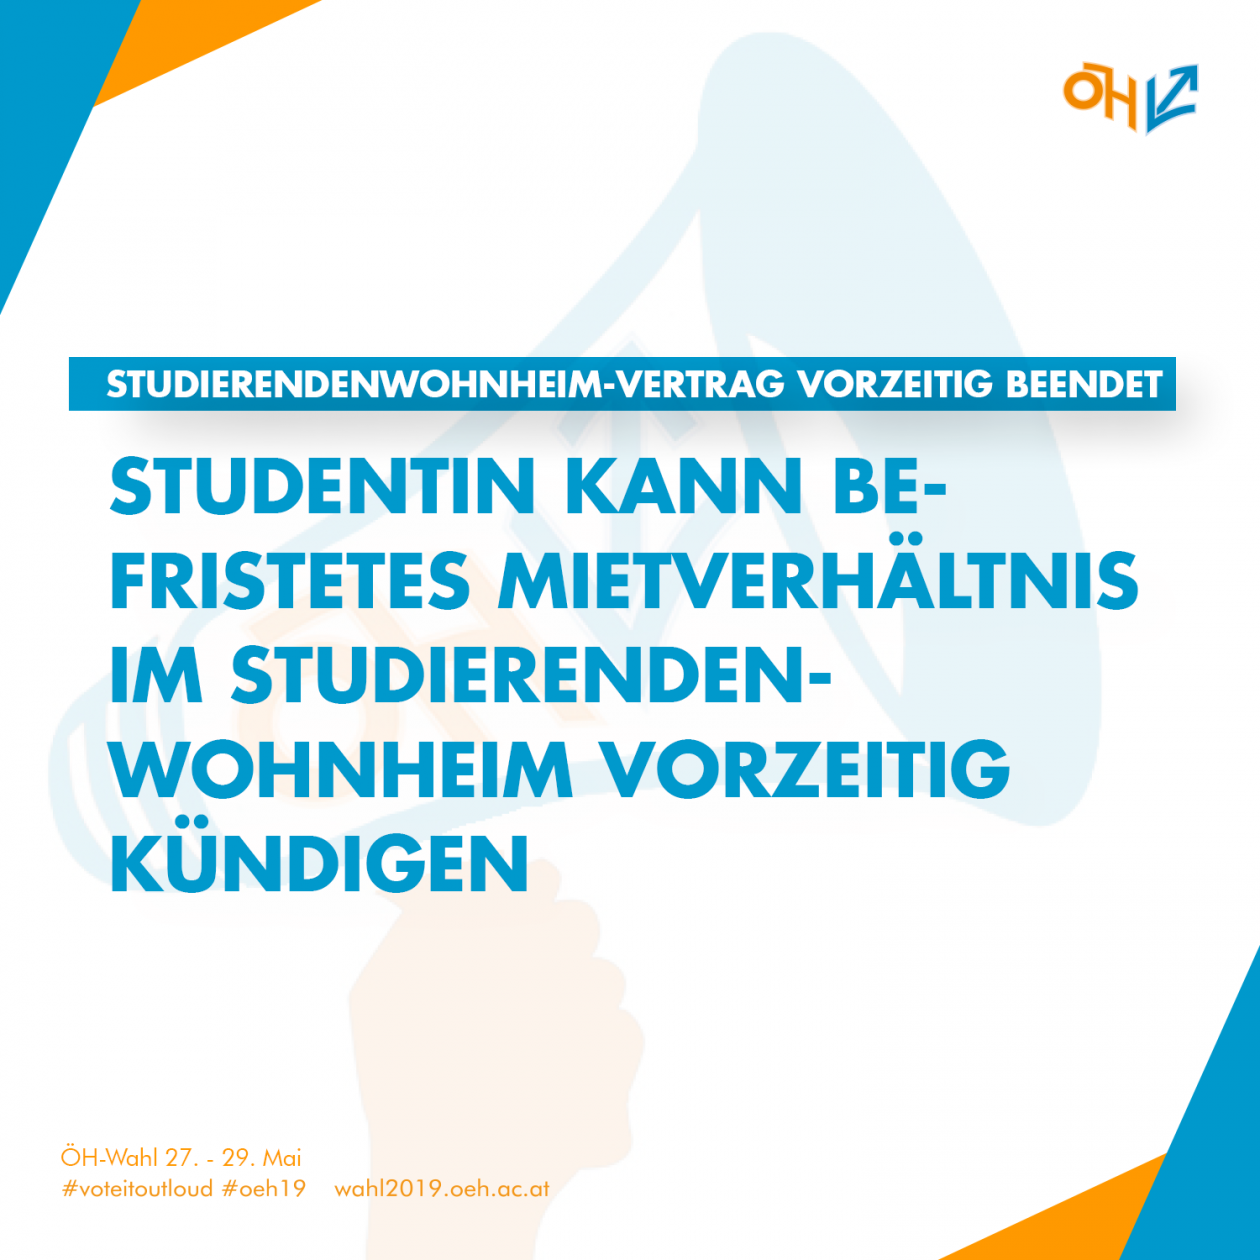 Studierendenwohnheim-Vertrag vorzeitig beendet: Studentin kann befristetes Mietverhältnis im Studierendenwohnheim vor